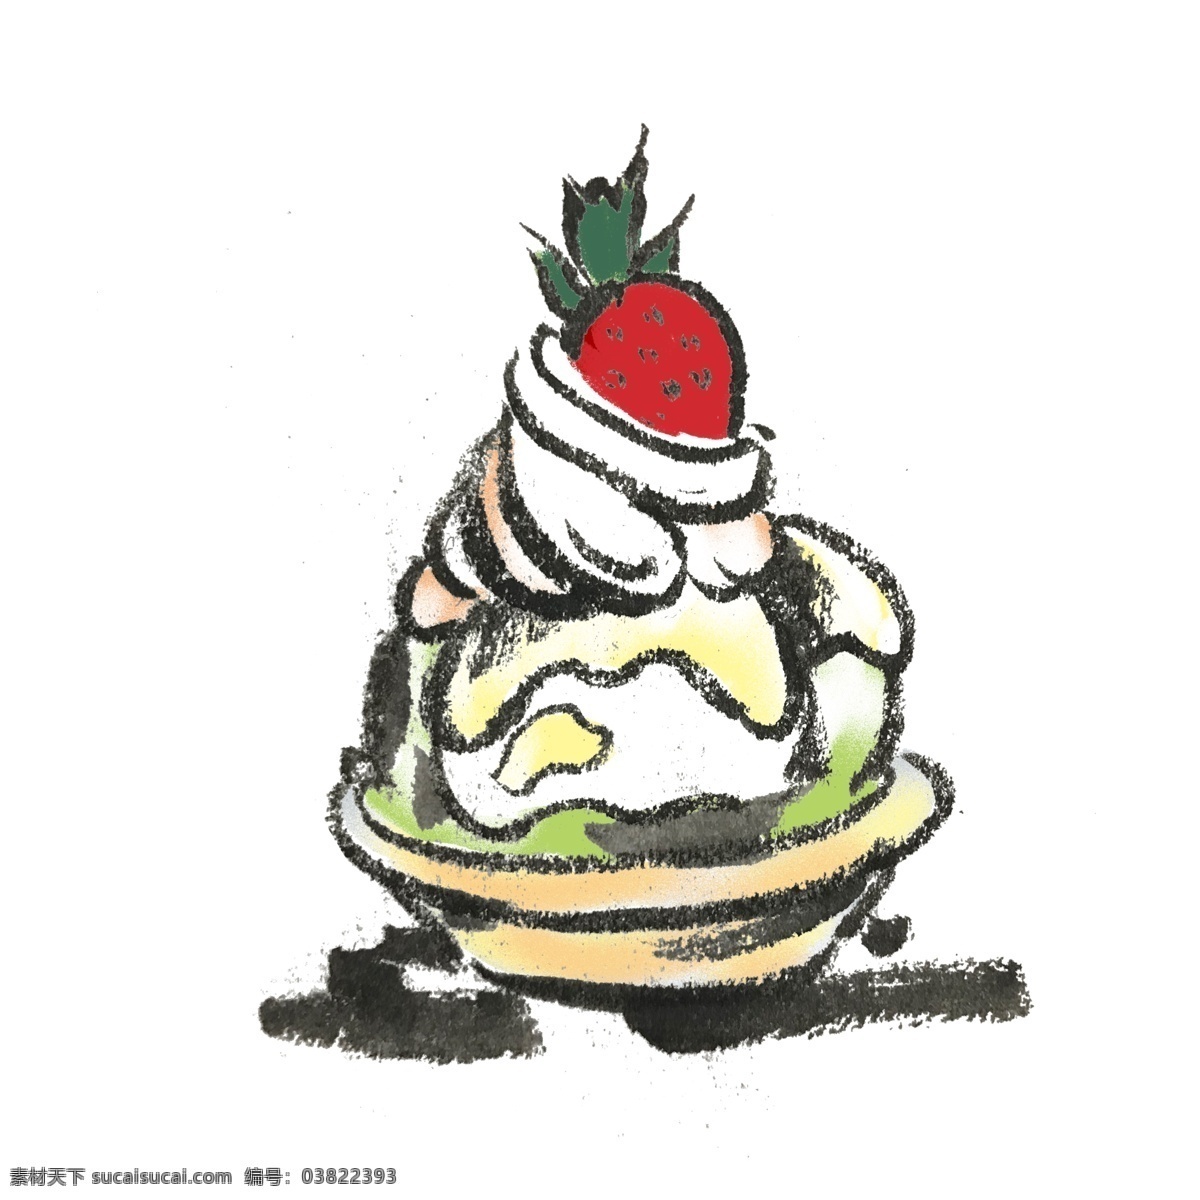 冰淇淋 甜品 手绘 插画 夏天 清凉 冰激凌 水果味 彩色 水墨风 中国风 童年 好吃 零度 美味 美食 蛋筒 诱人 食物